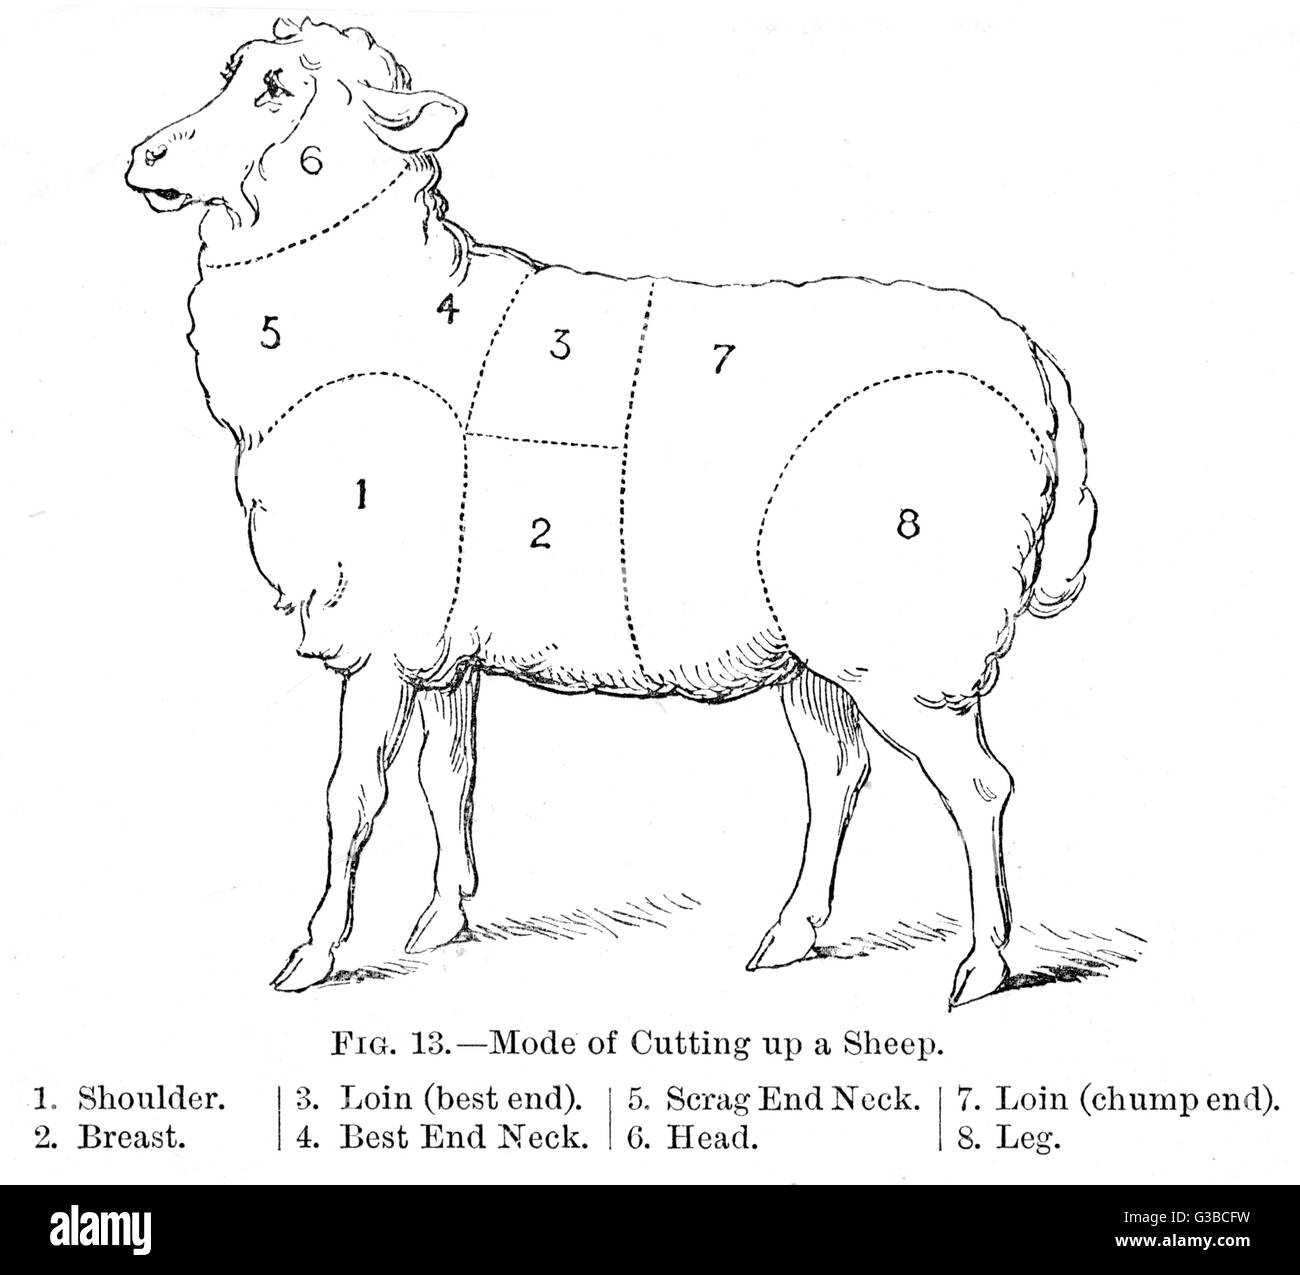 Diagrama de una oveja mostrando los diferentes cortes. Fecha: siglo XIX Foto de stock